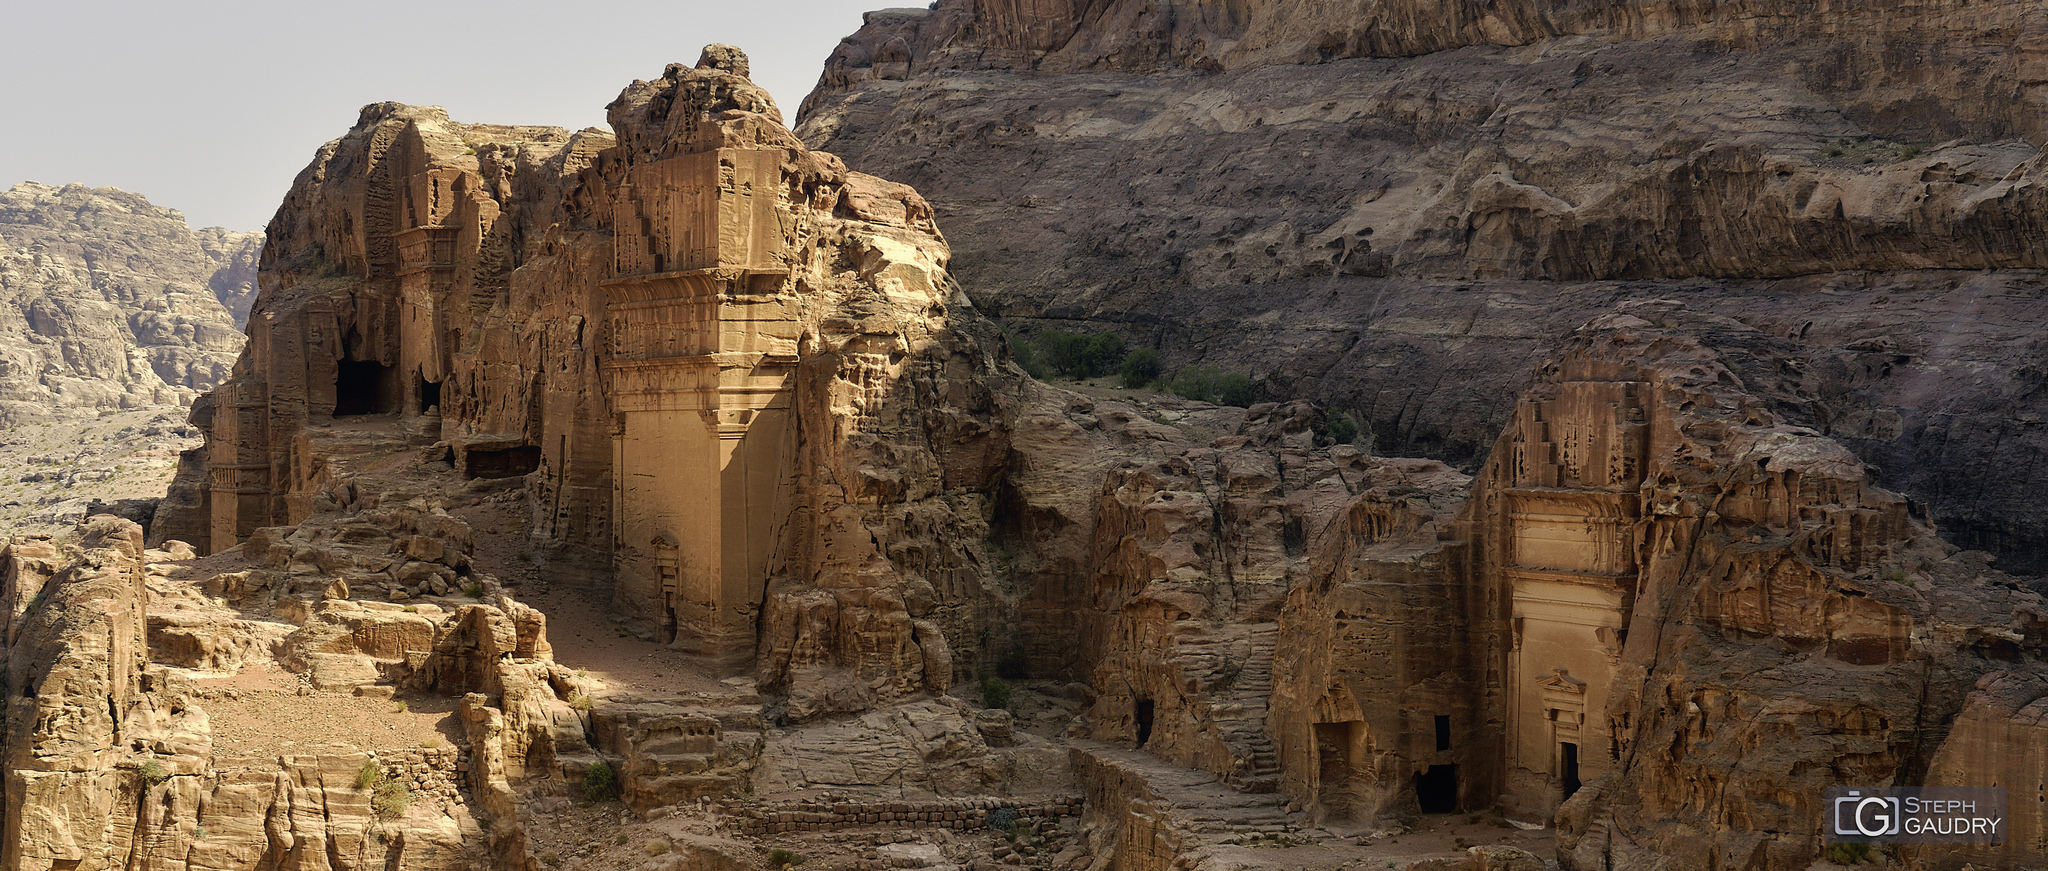 Jordanie, la vallée de Petra [Klicken Sie hier, um die Diashow zu starten]